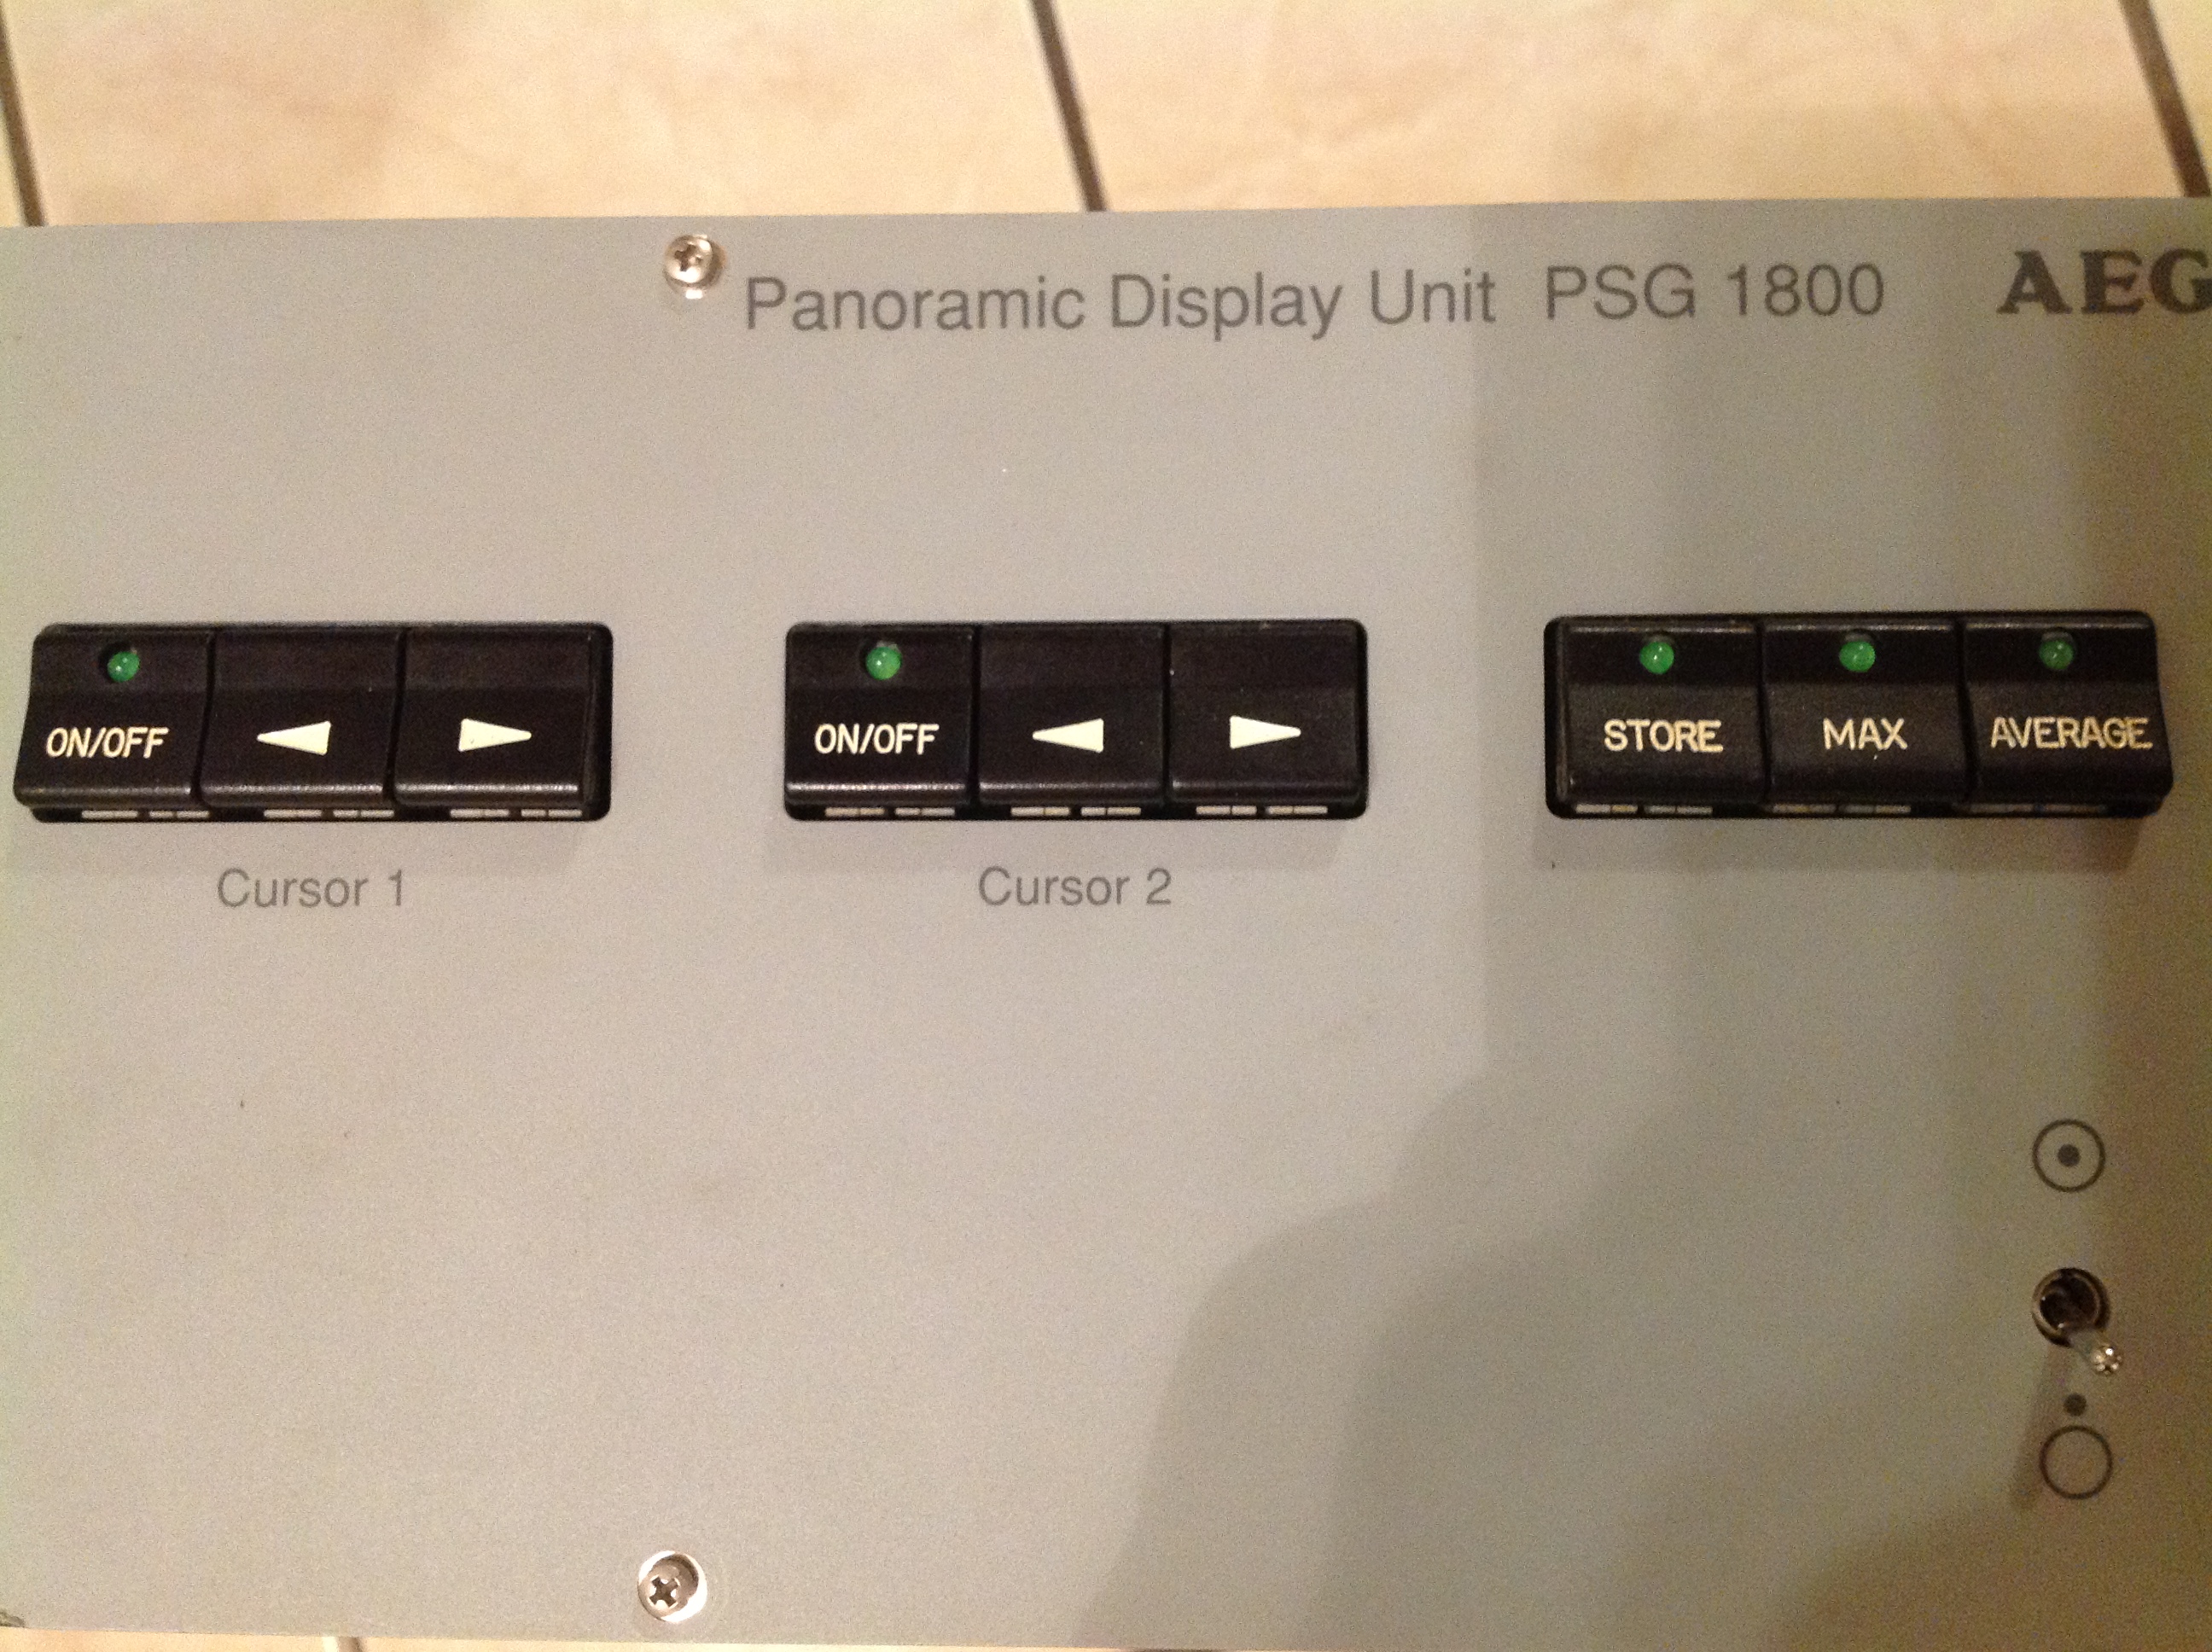 AEG Frequenzspektrumanzeiger-Panoramic Display Unit PSG 1800 für Panoramasichtgerät PSG 1800